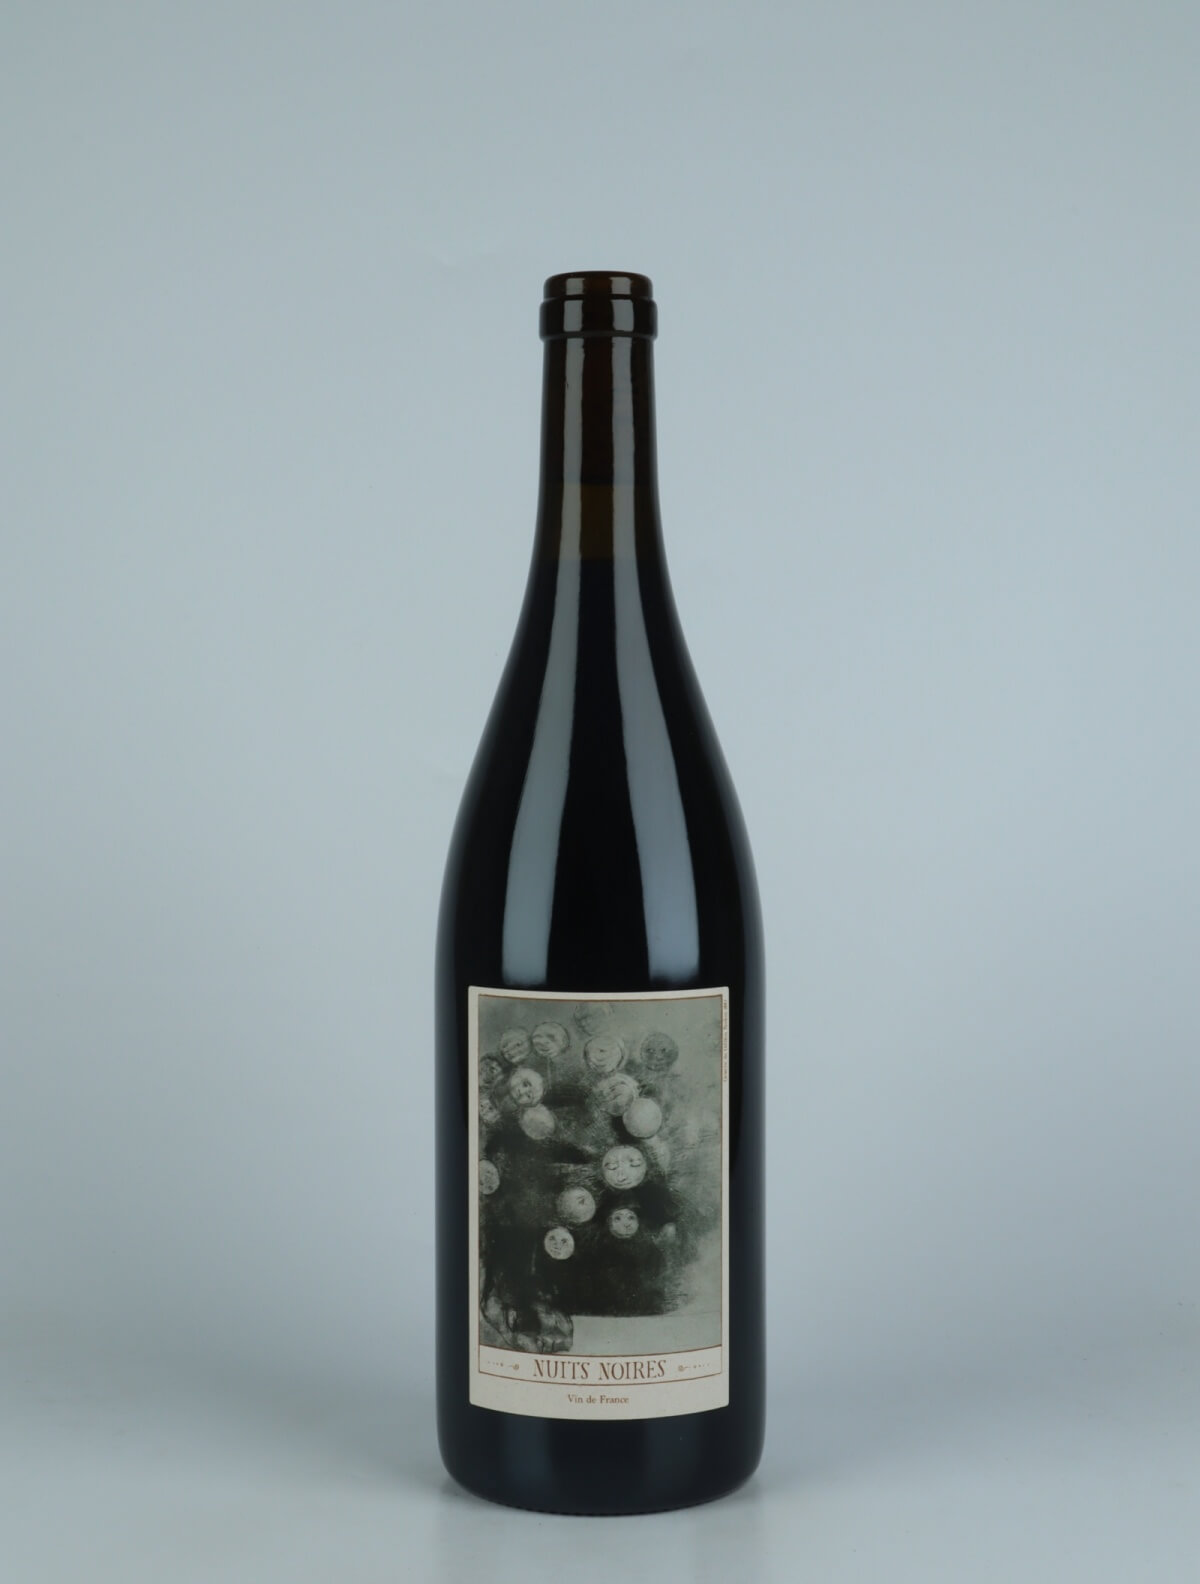 En flaske 2022 Nuits Noires Rødvin fra Clos Bateau, Beaujolais i Frankrig